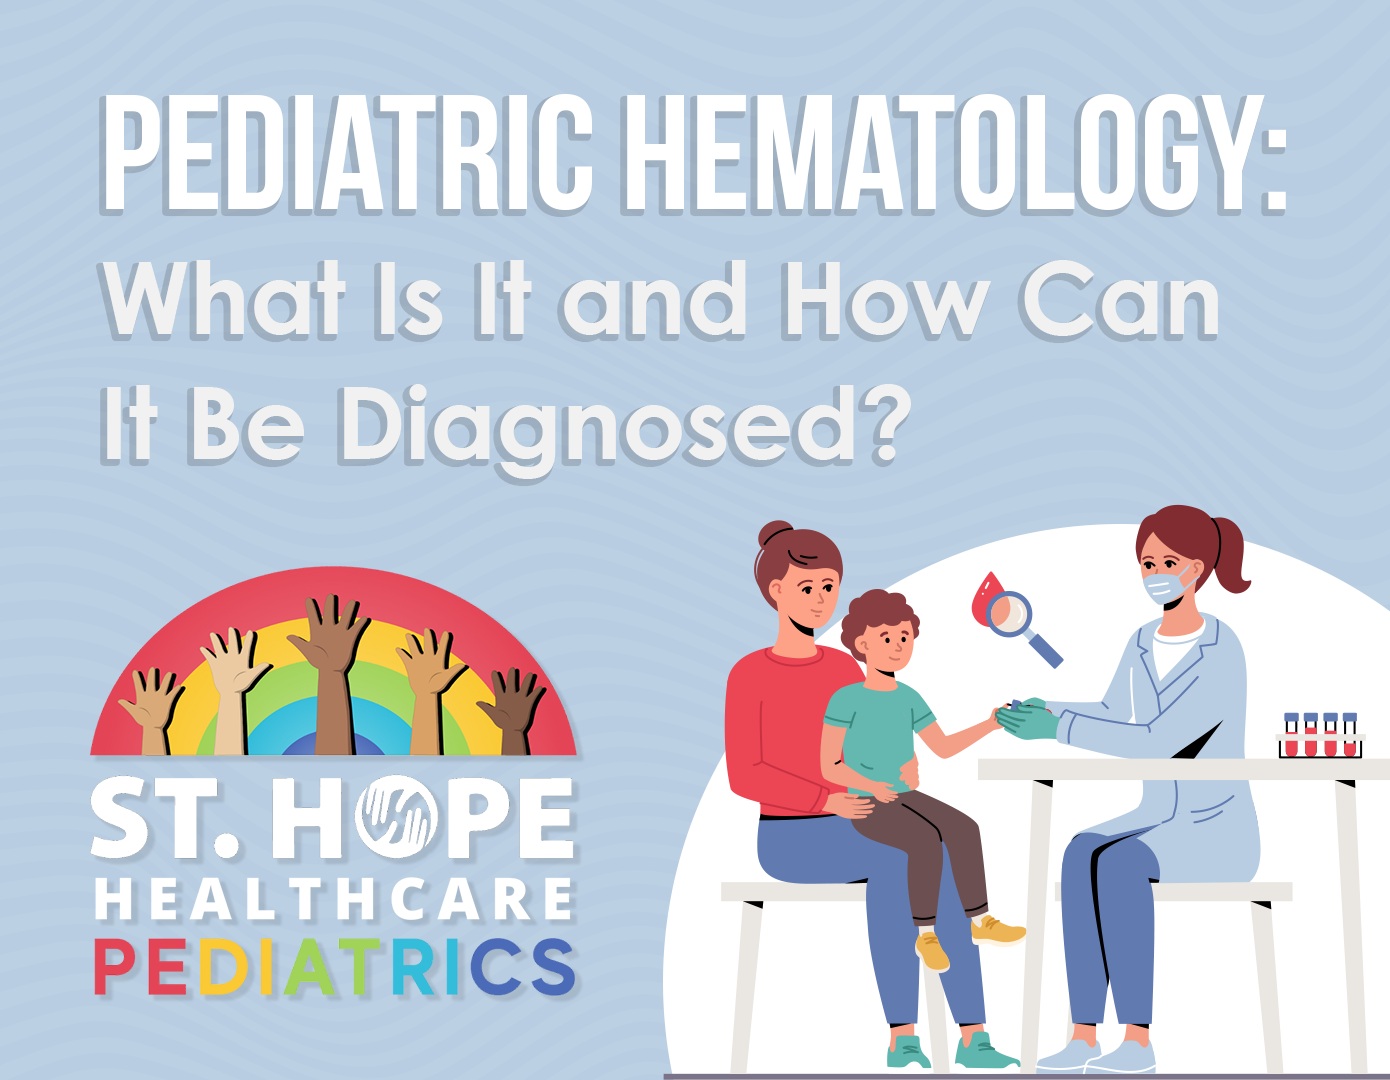 what is pediatric hematology?